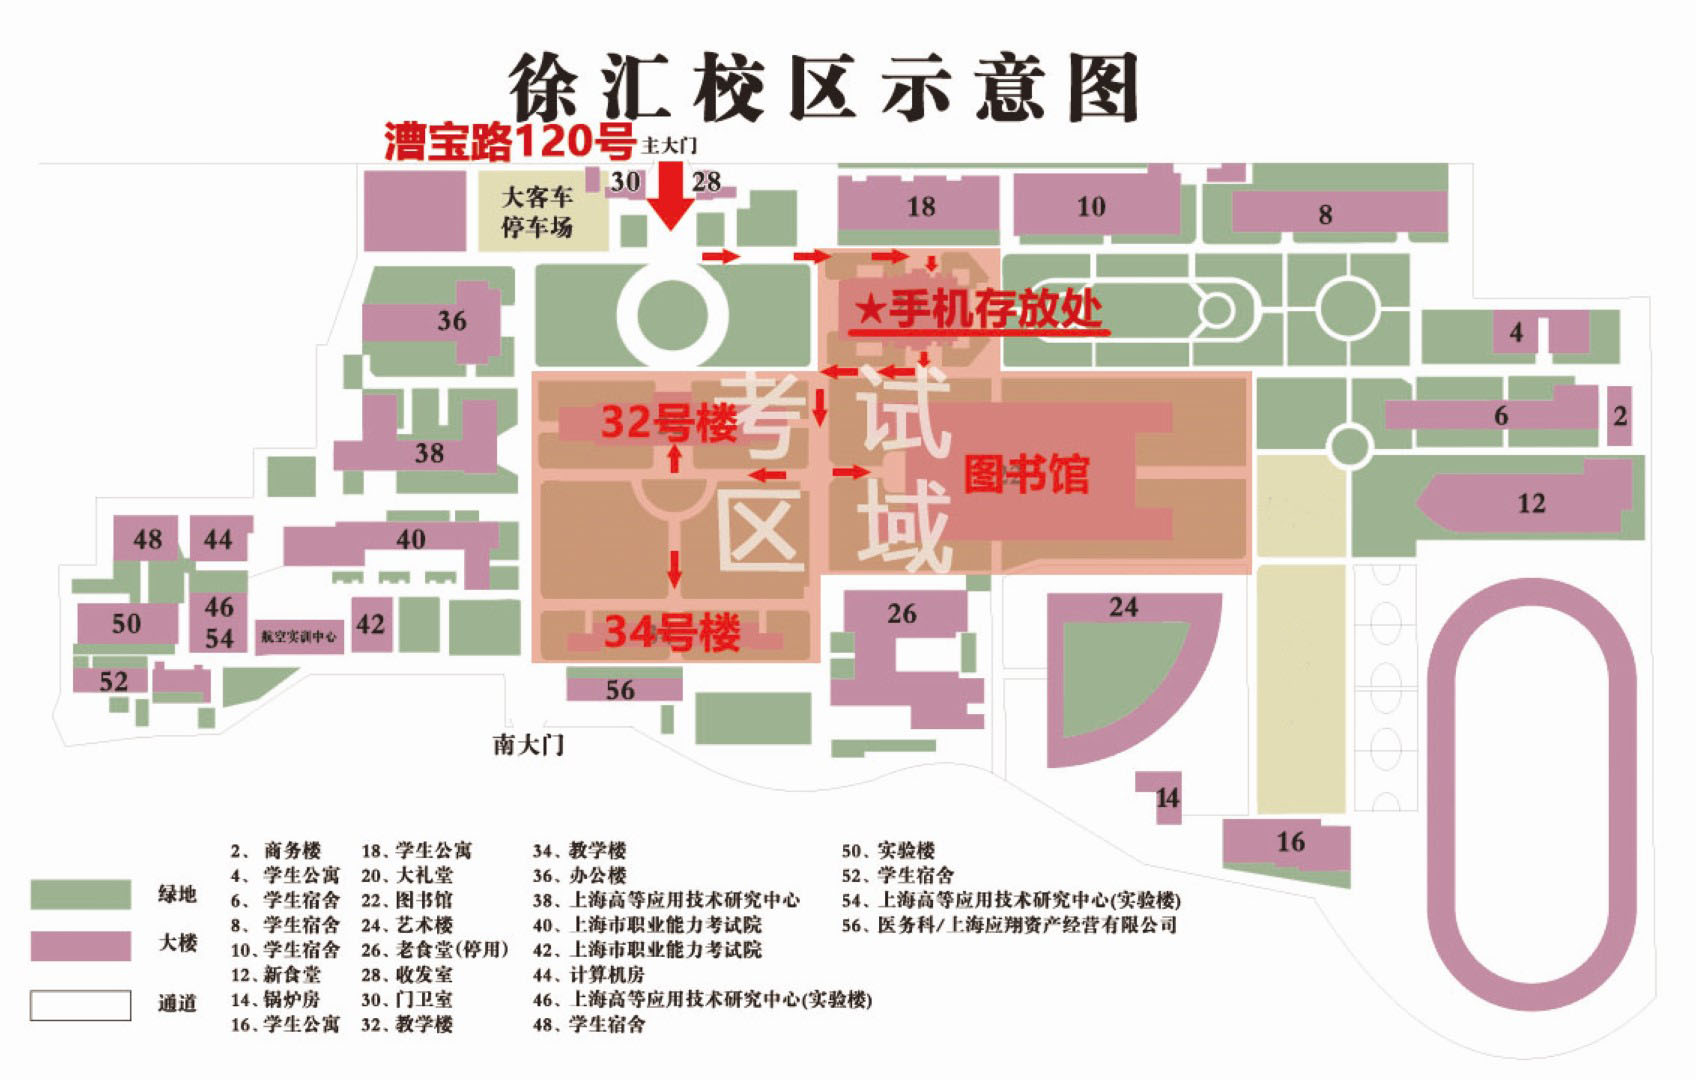 上海应用技术大学自学考试